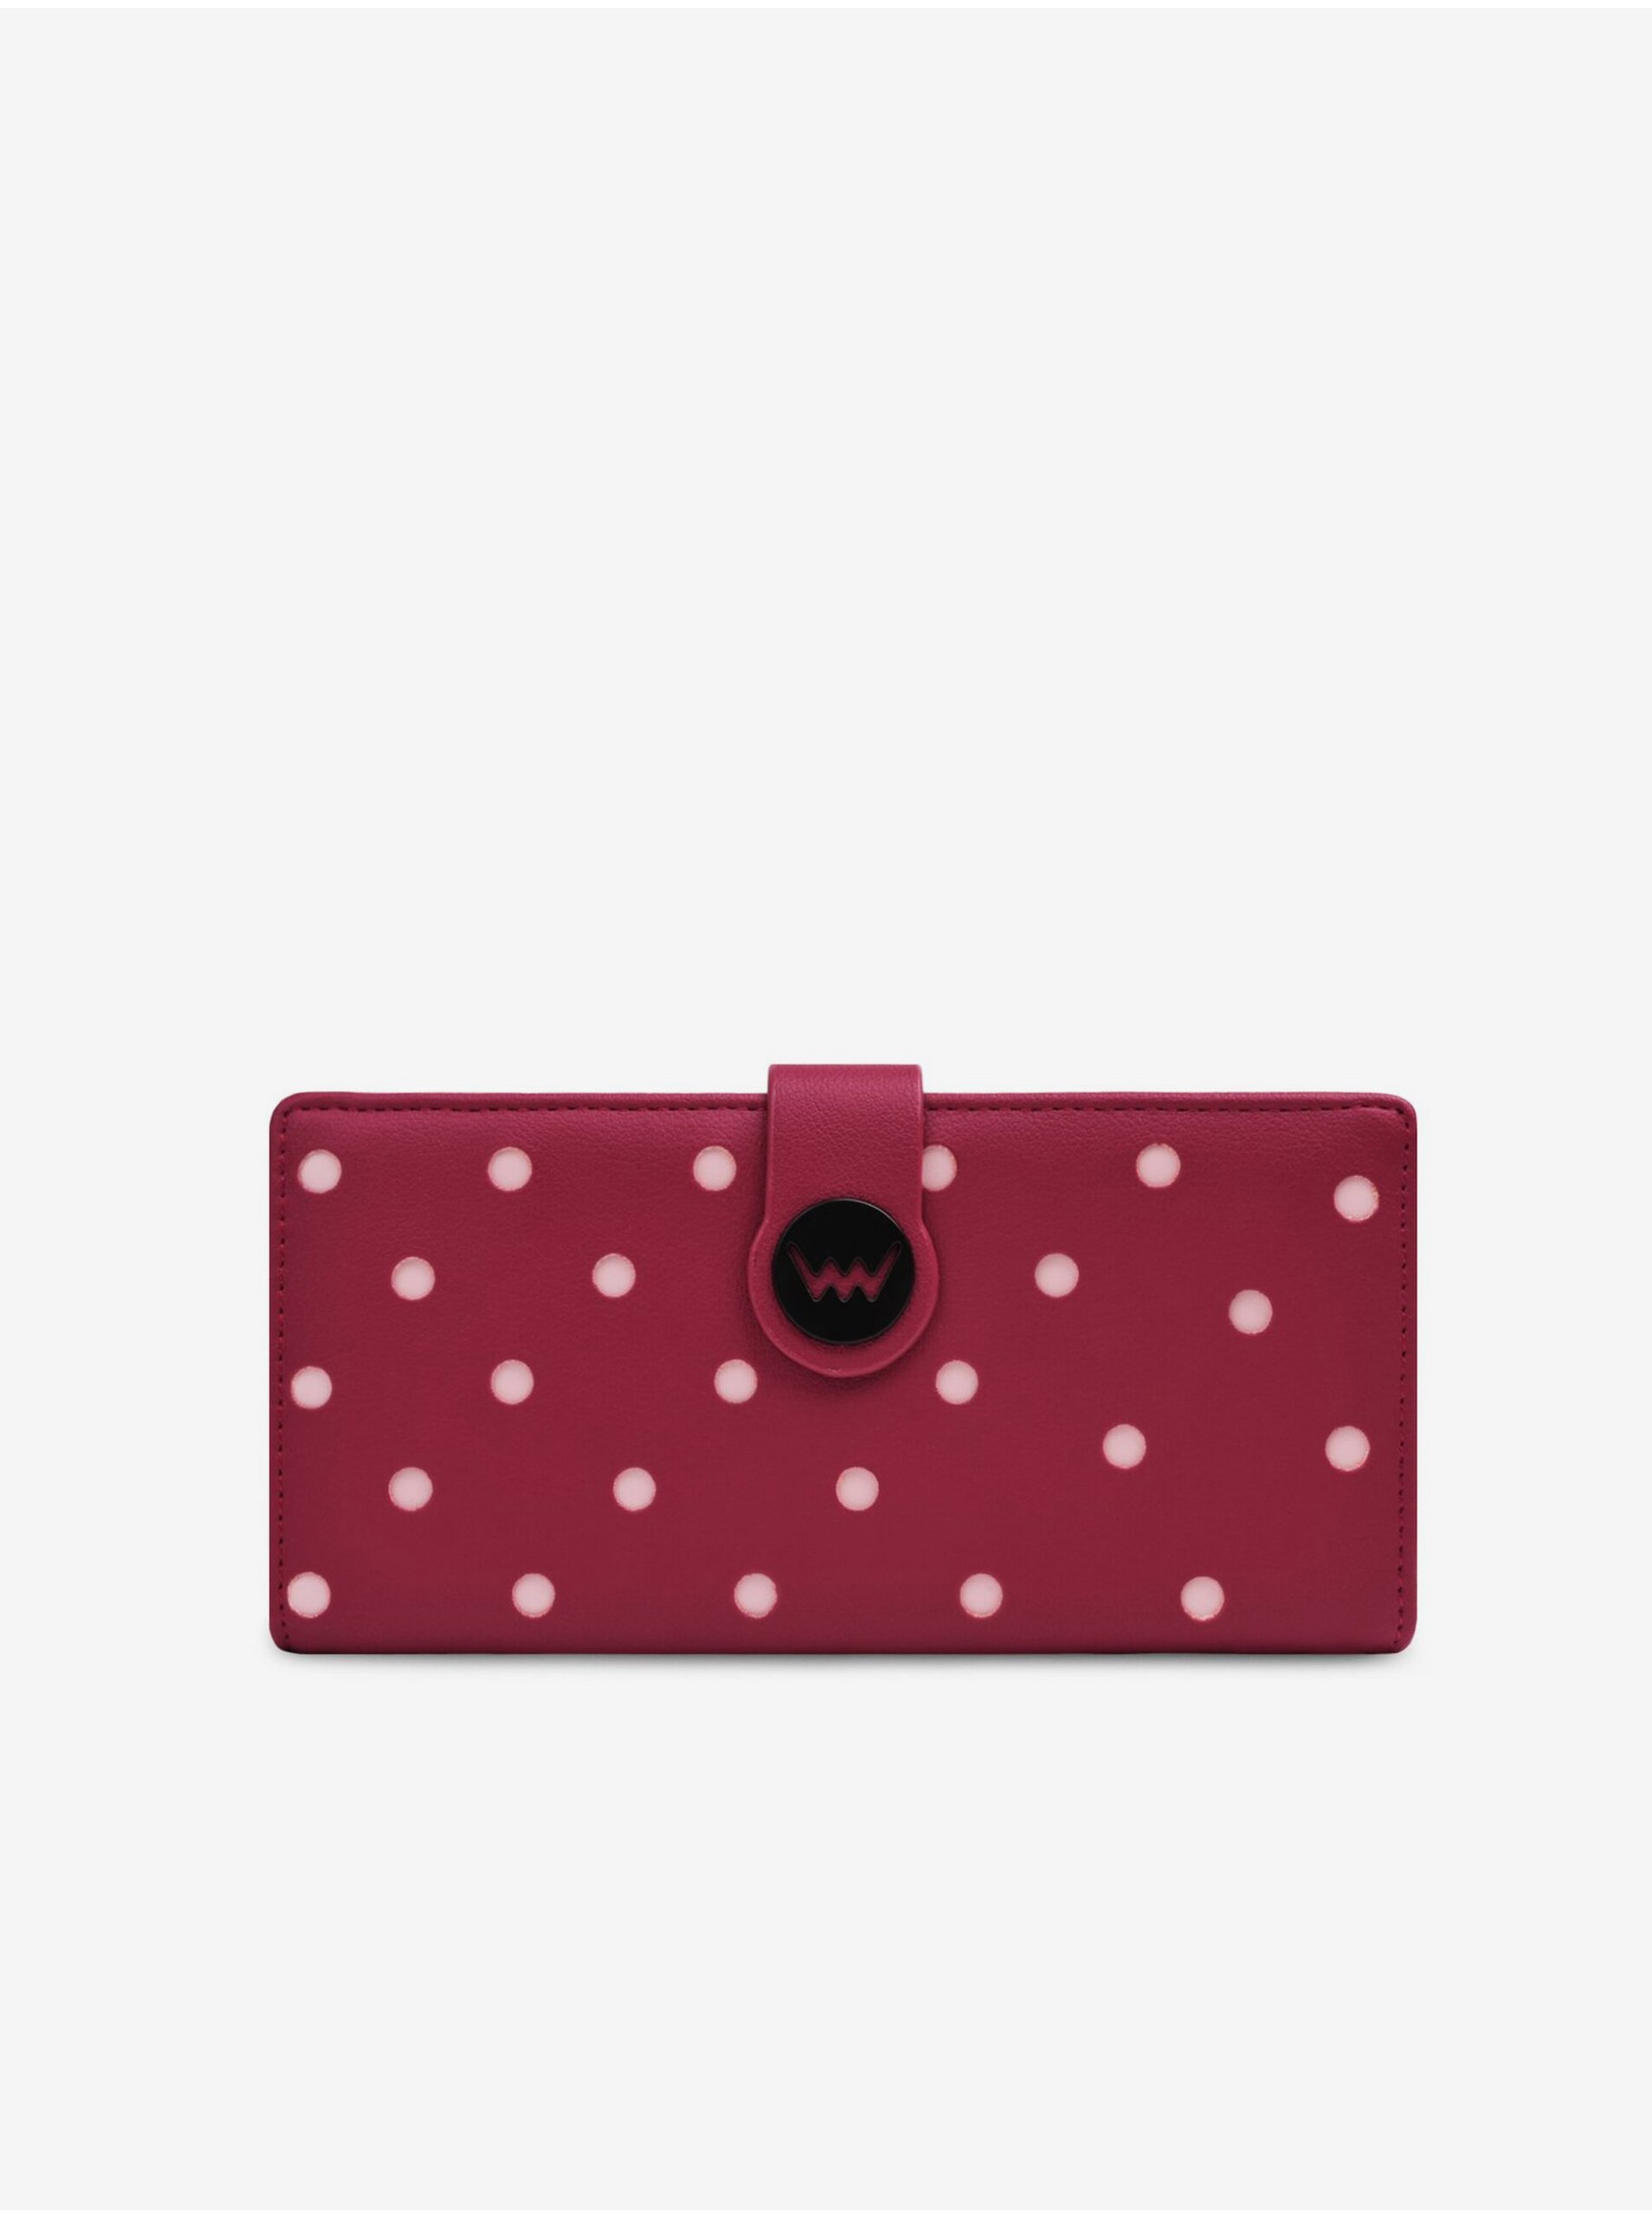 E-shop Vínová dámská puntíkovaná peněženka Vuch Pippa Wine